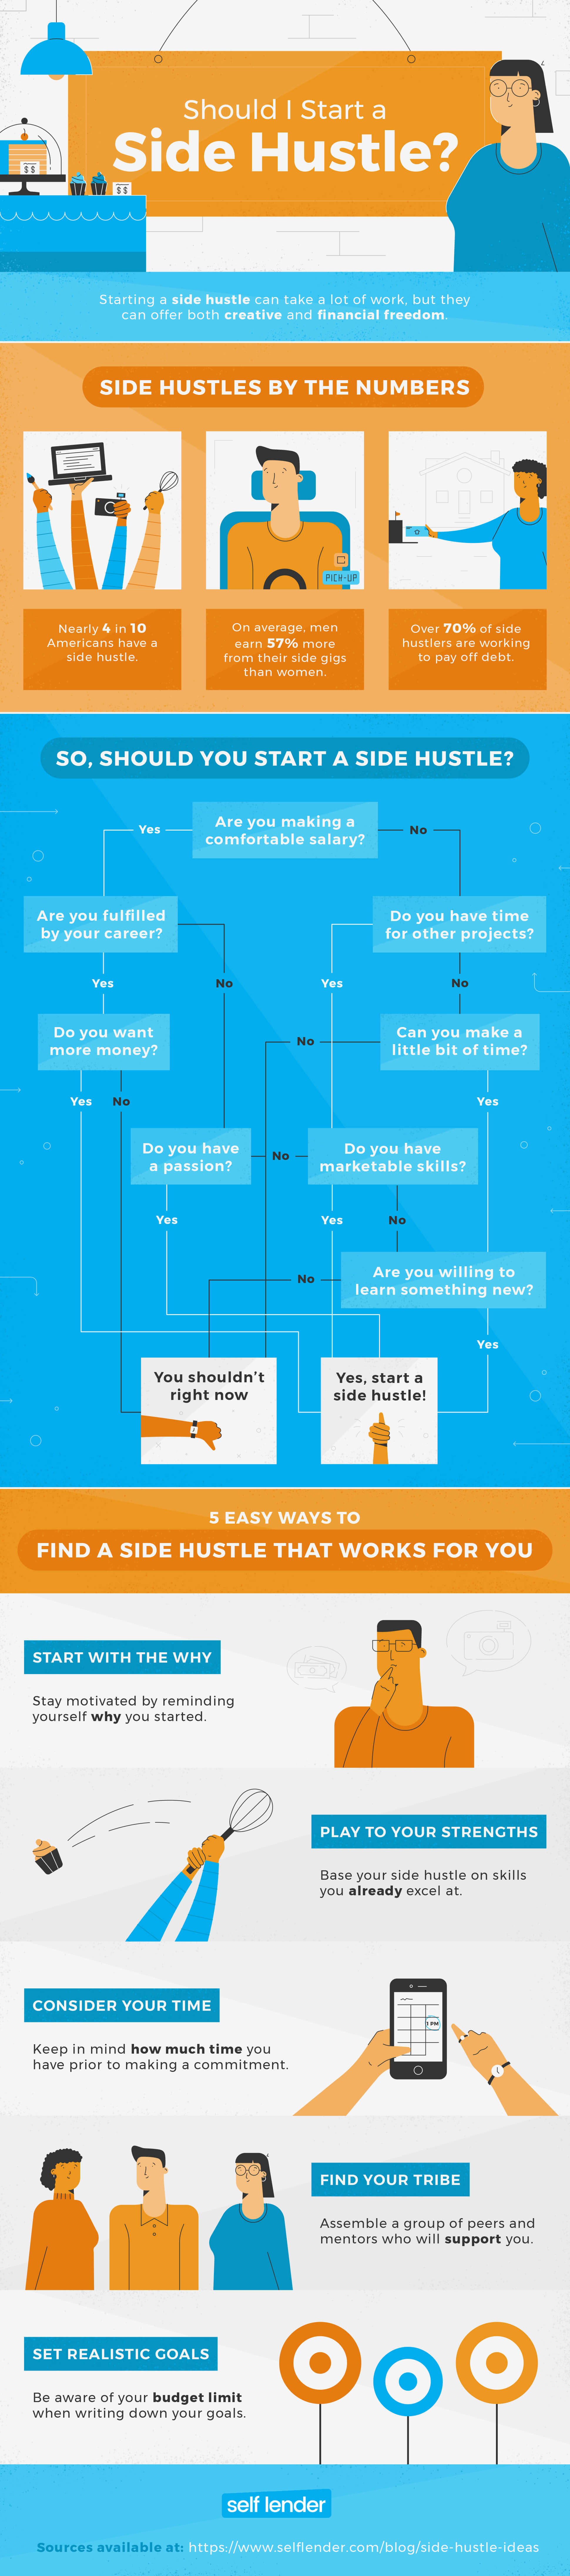 10 Creative Side Hustles that Make Real Money - Side Hustle Nation